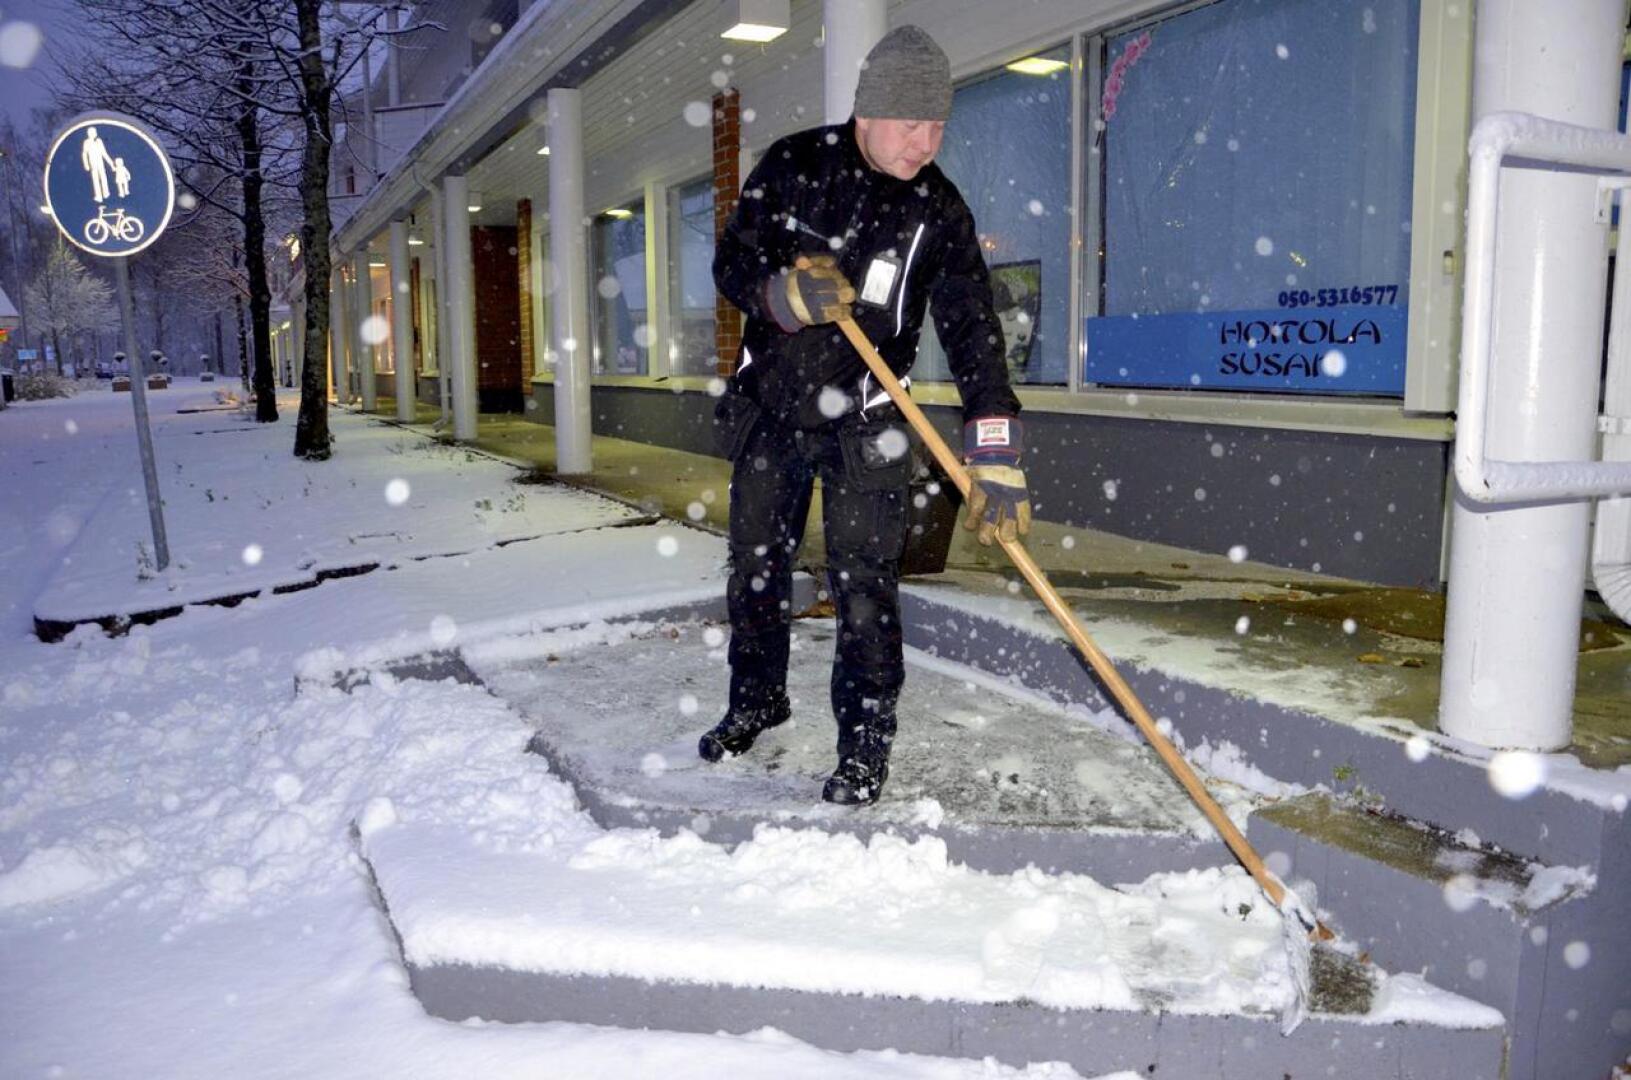 Muun muassa kiinteistöhuollon tehtäviin haettiin marraskuussa työntekijöitä maakunnassa. Huoltomies Veli-Pekka Takalo aamun lumitöissä Ylivieskassa.